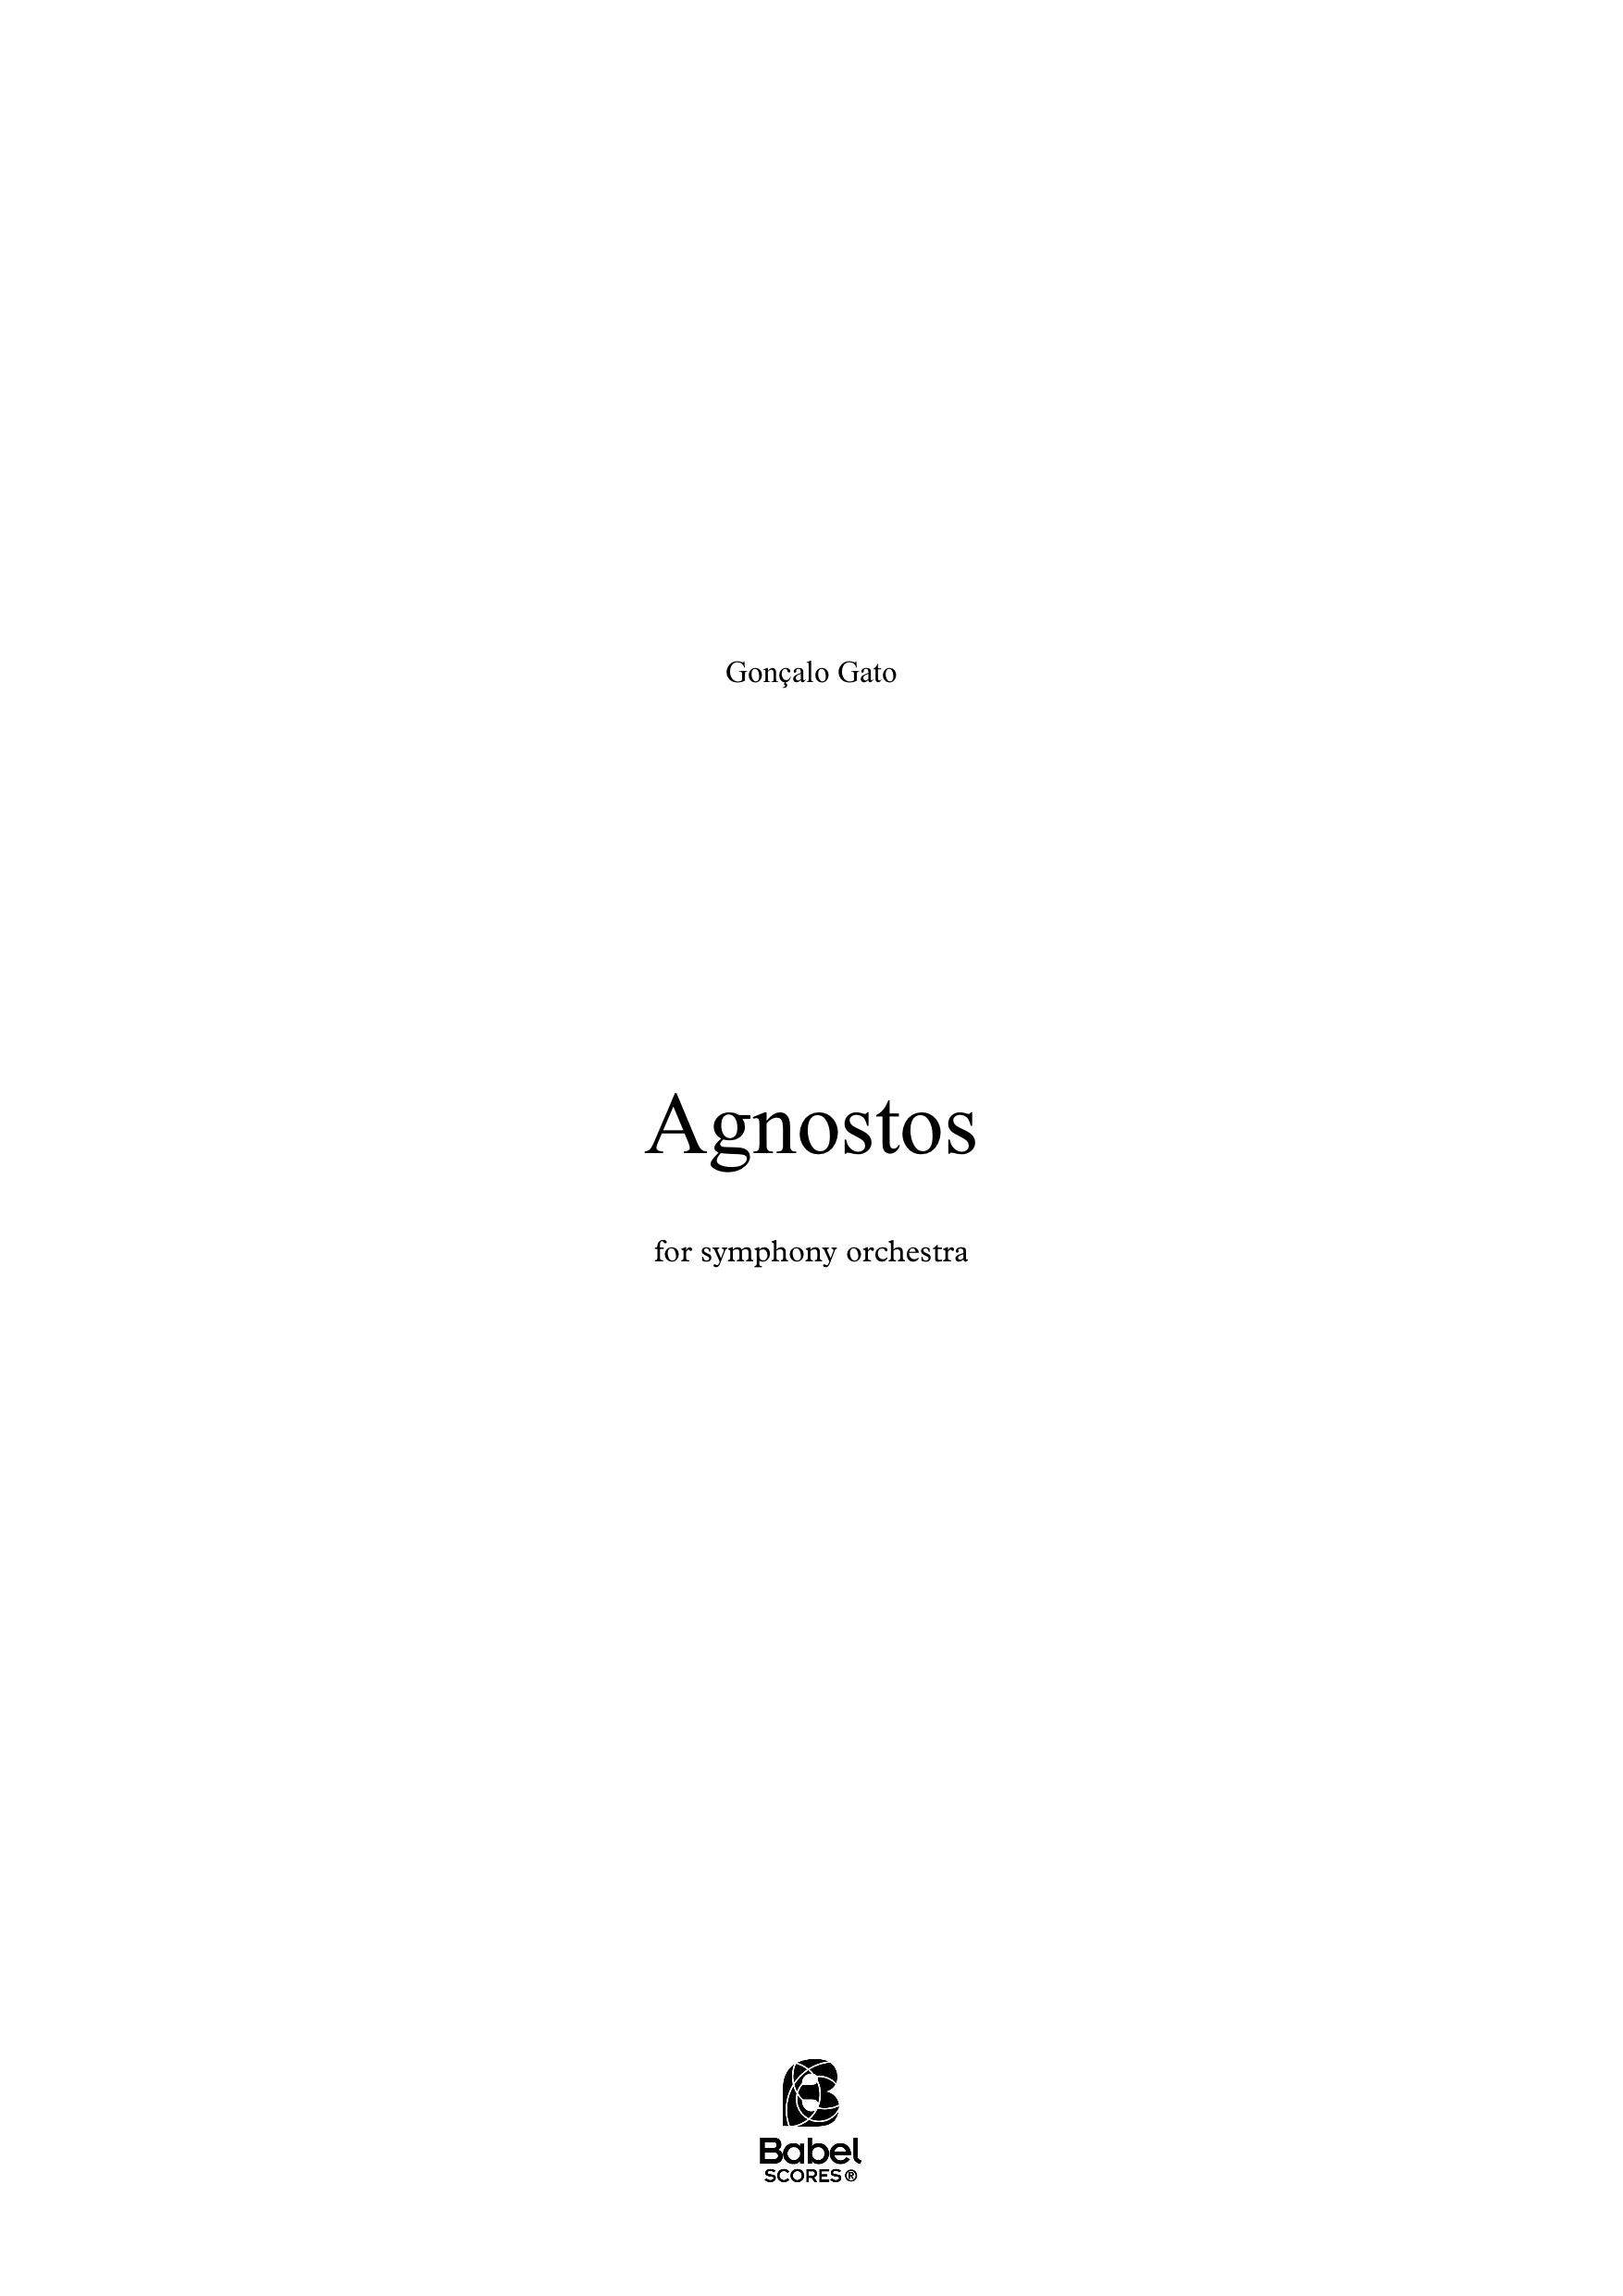 Agnostos A3 z 2 1 17